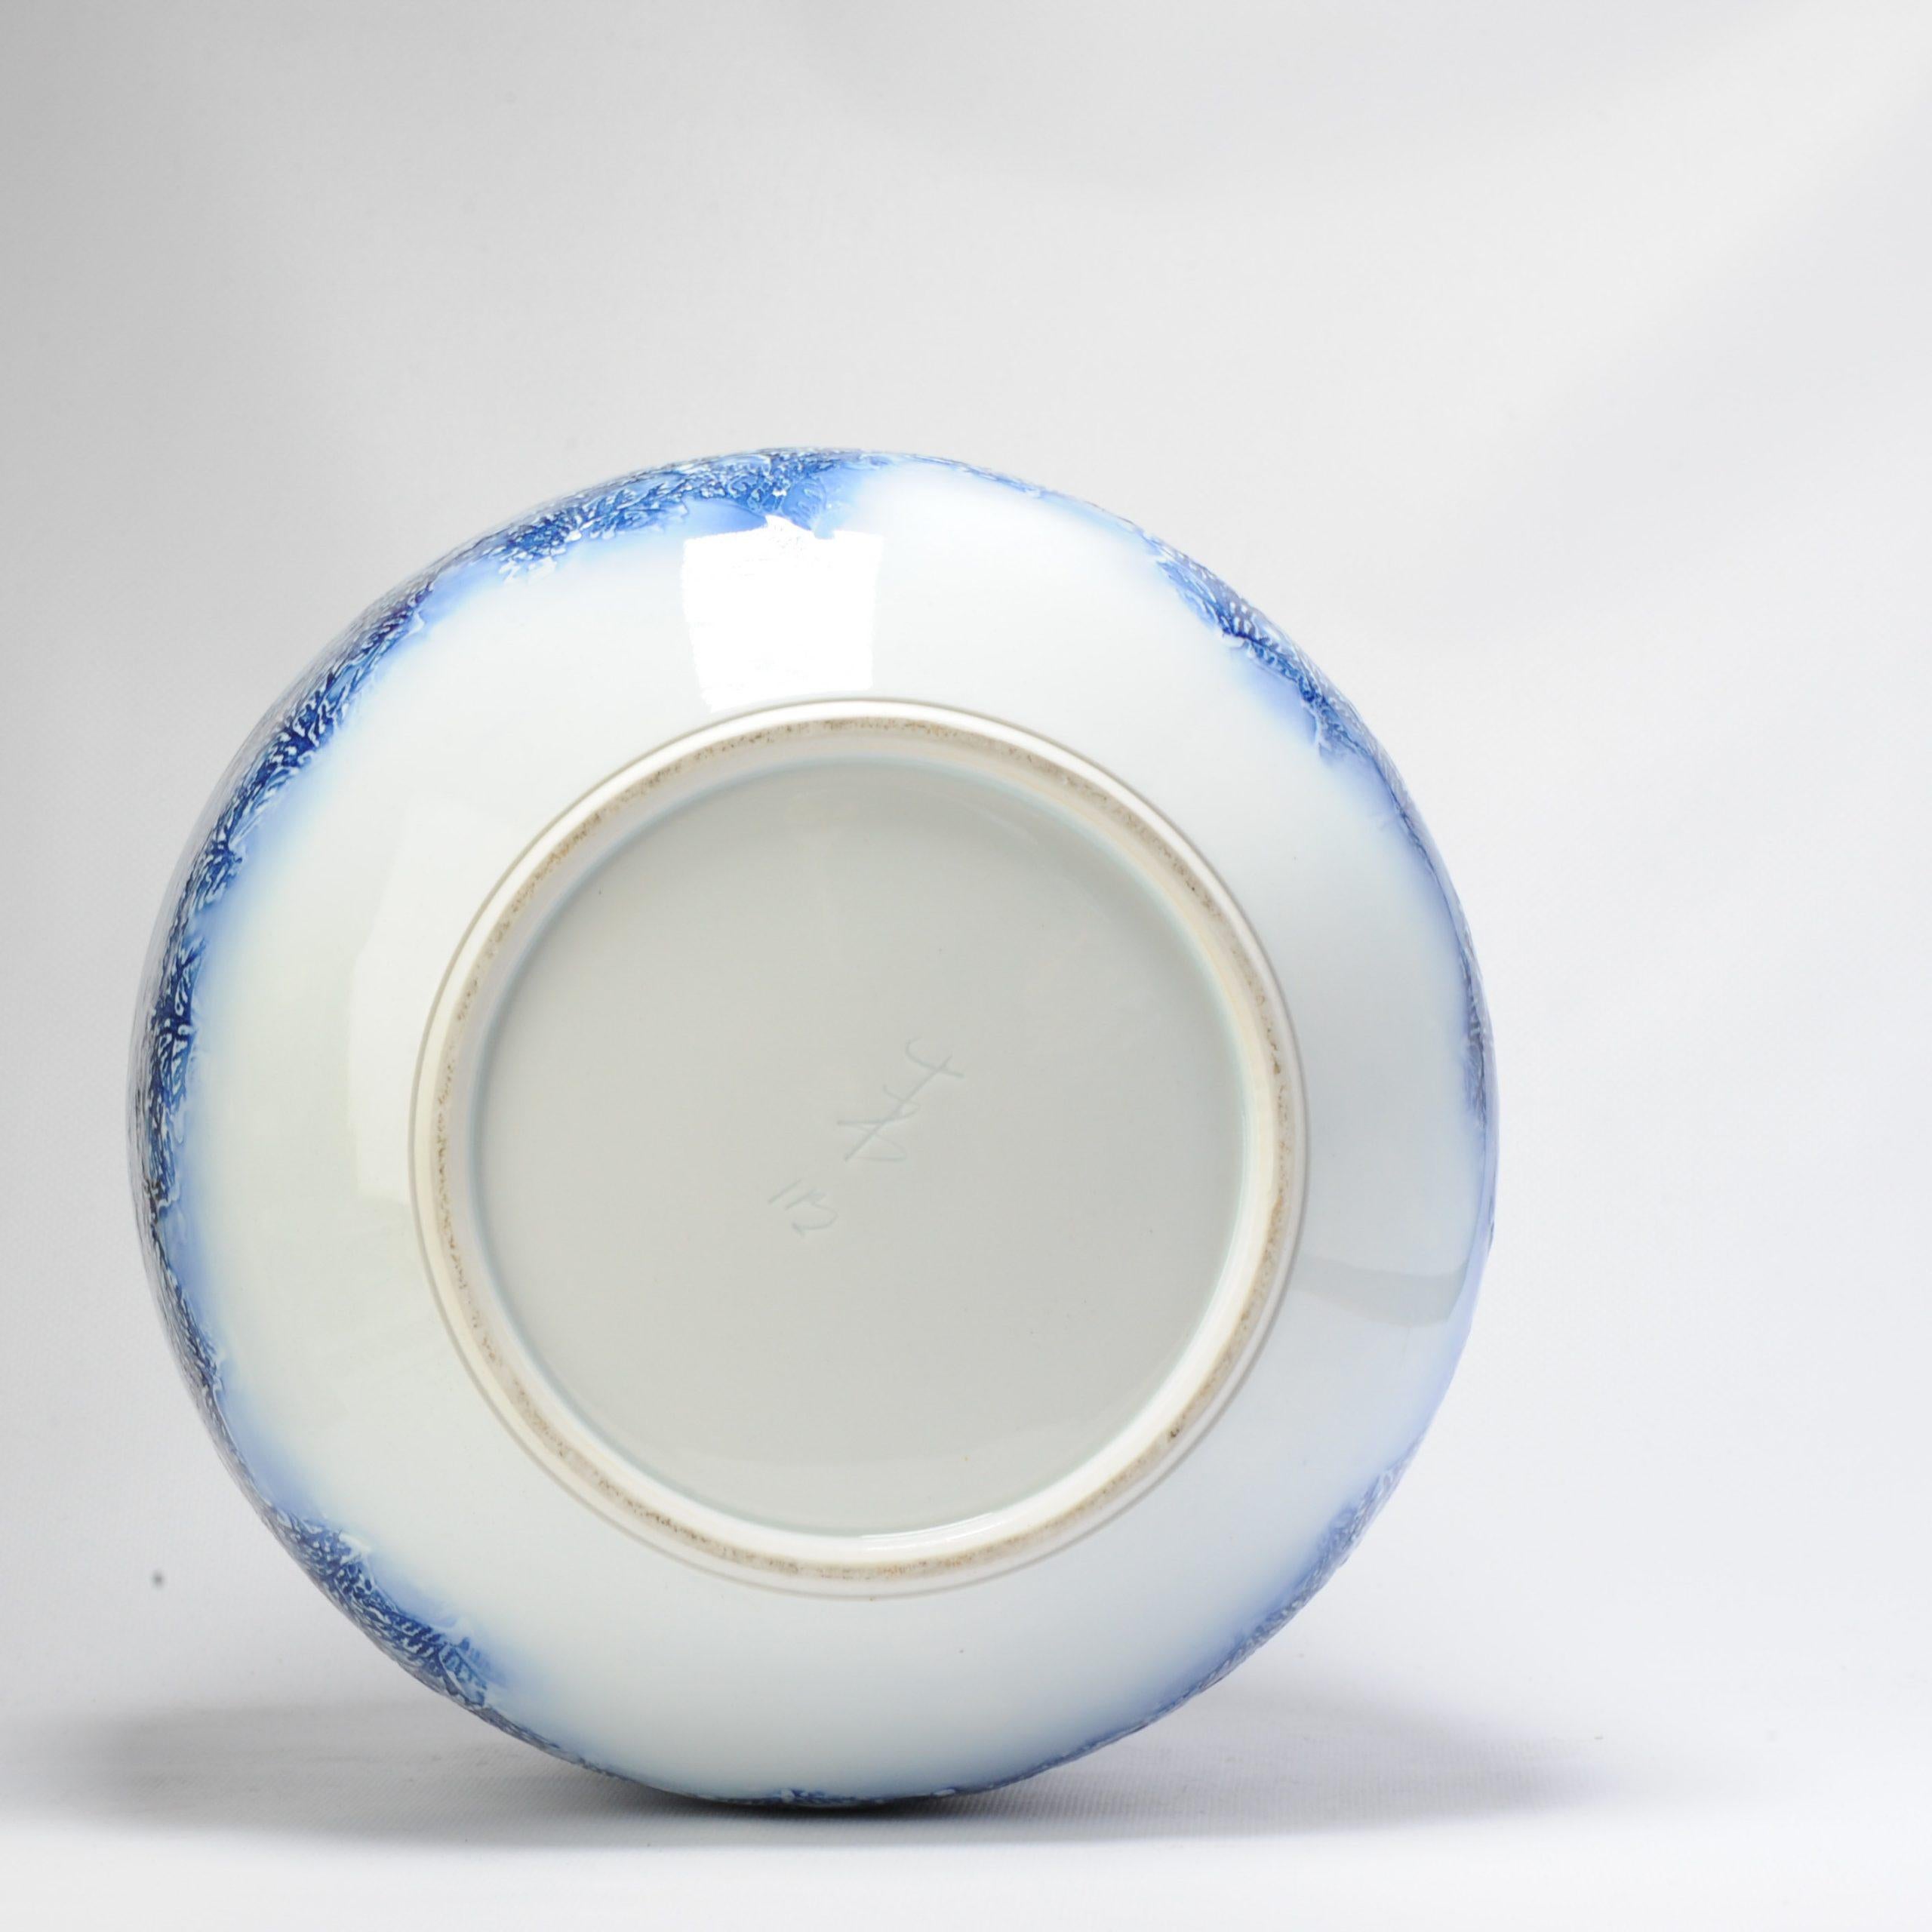 Ein wunderschönes und seltenes Stück.

Prächtige blau-weiße Porzellanvase mit einer Winterlandschaft. Hergestellt von Fuji Shumei

Fujii Herr Aki Fujii hat sich auf die Technik spezialisiert, einen Berg zu zeichnen, indem er die Adern eines Blattes